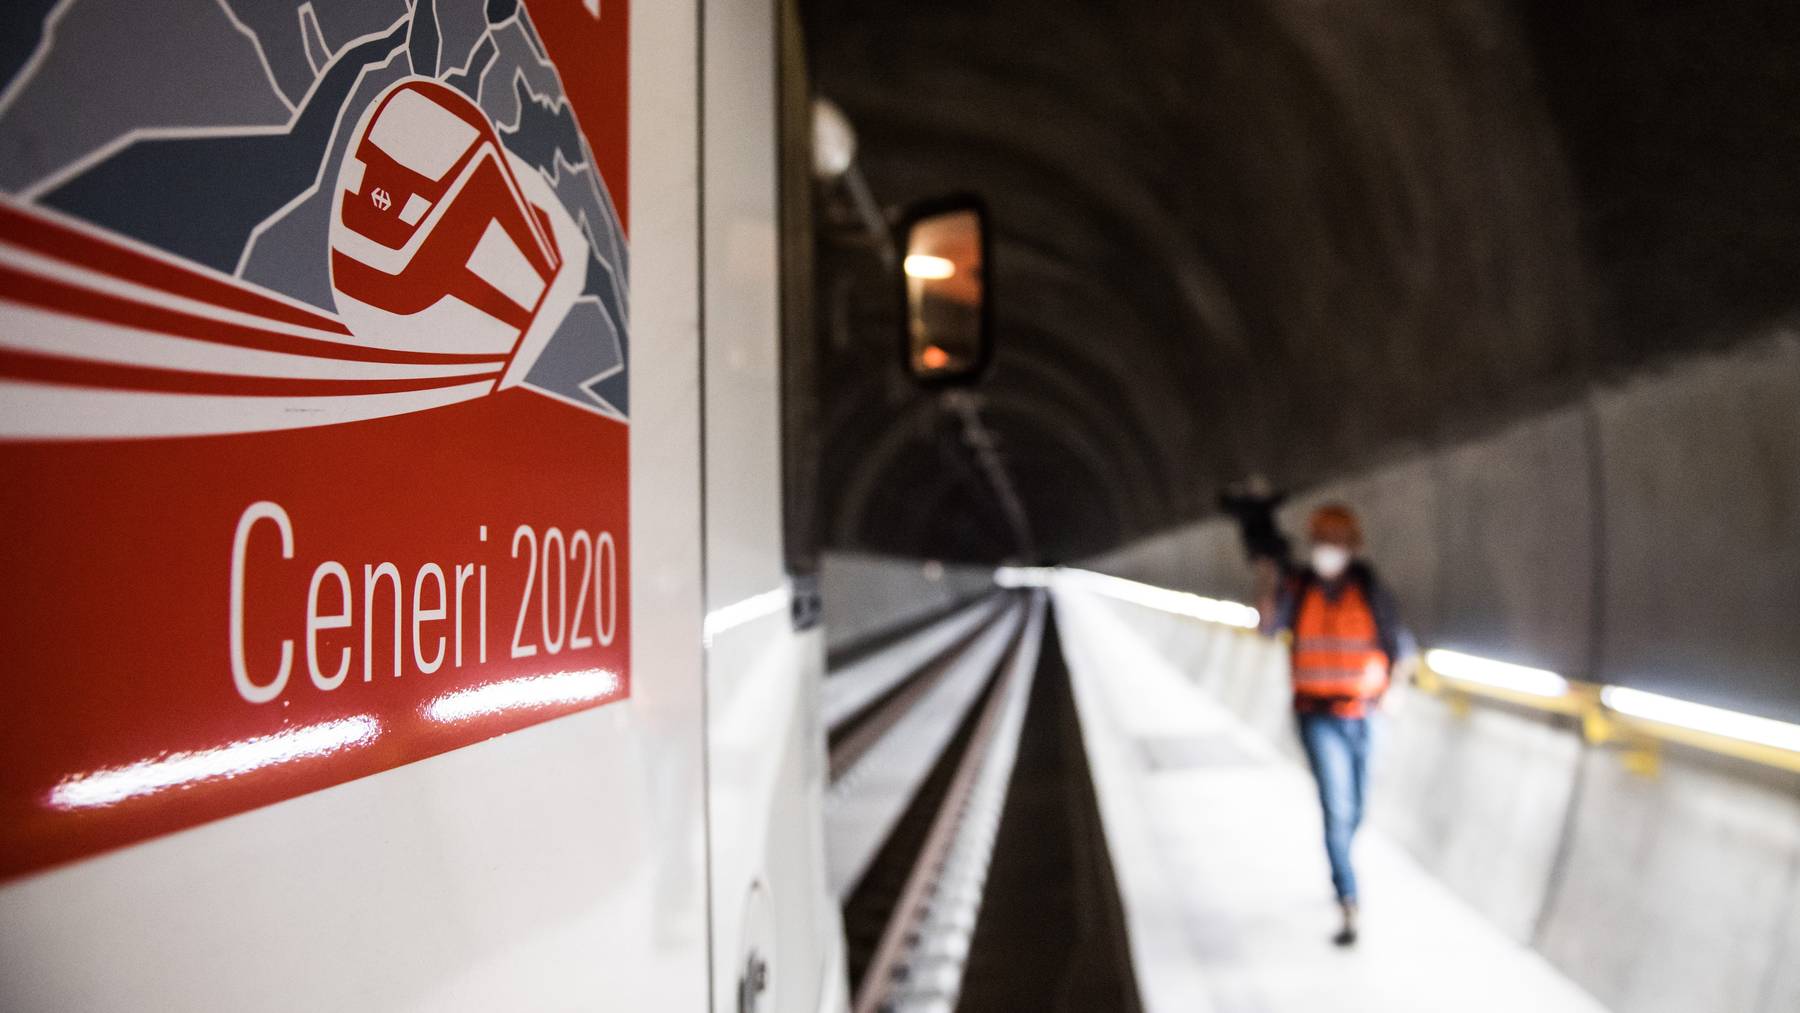 Die Petition wird zur Eröffnung des Ceneri-Tunnels eingereicht.